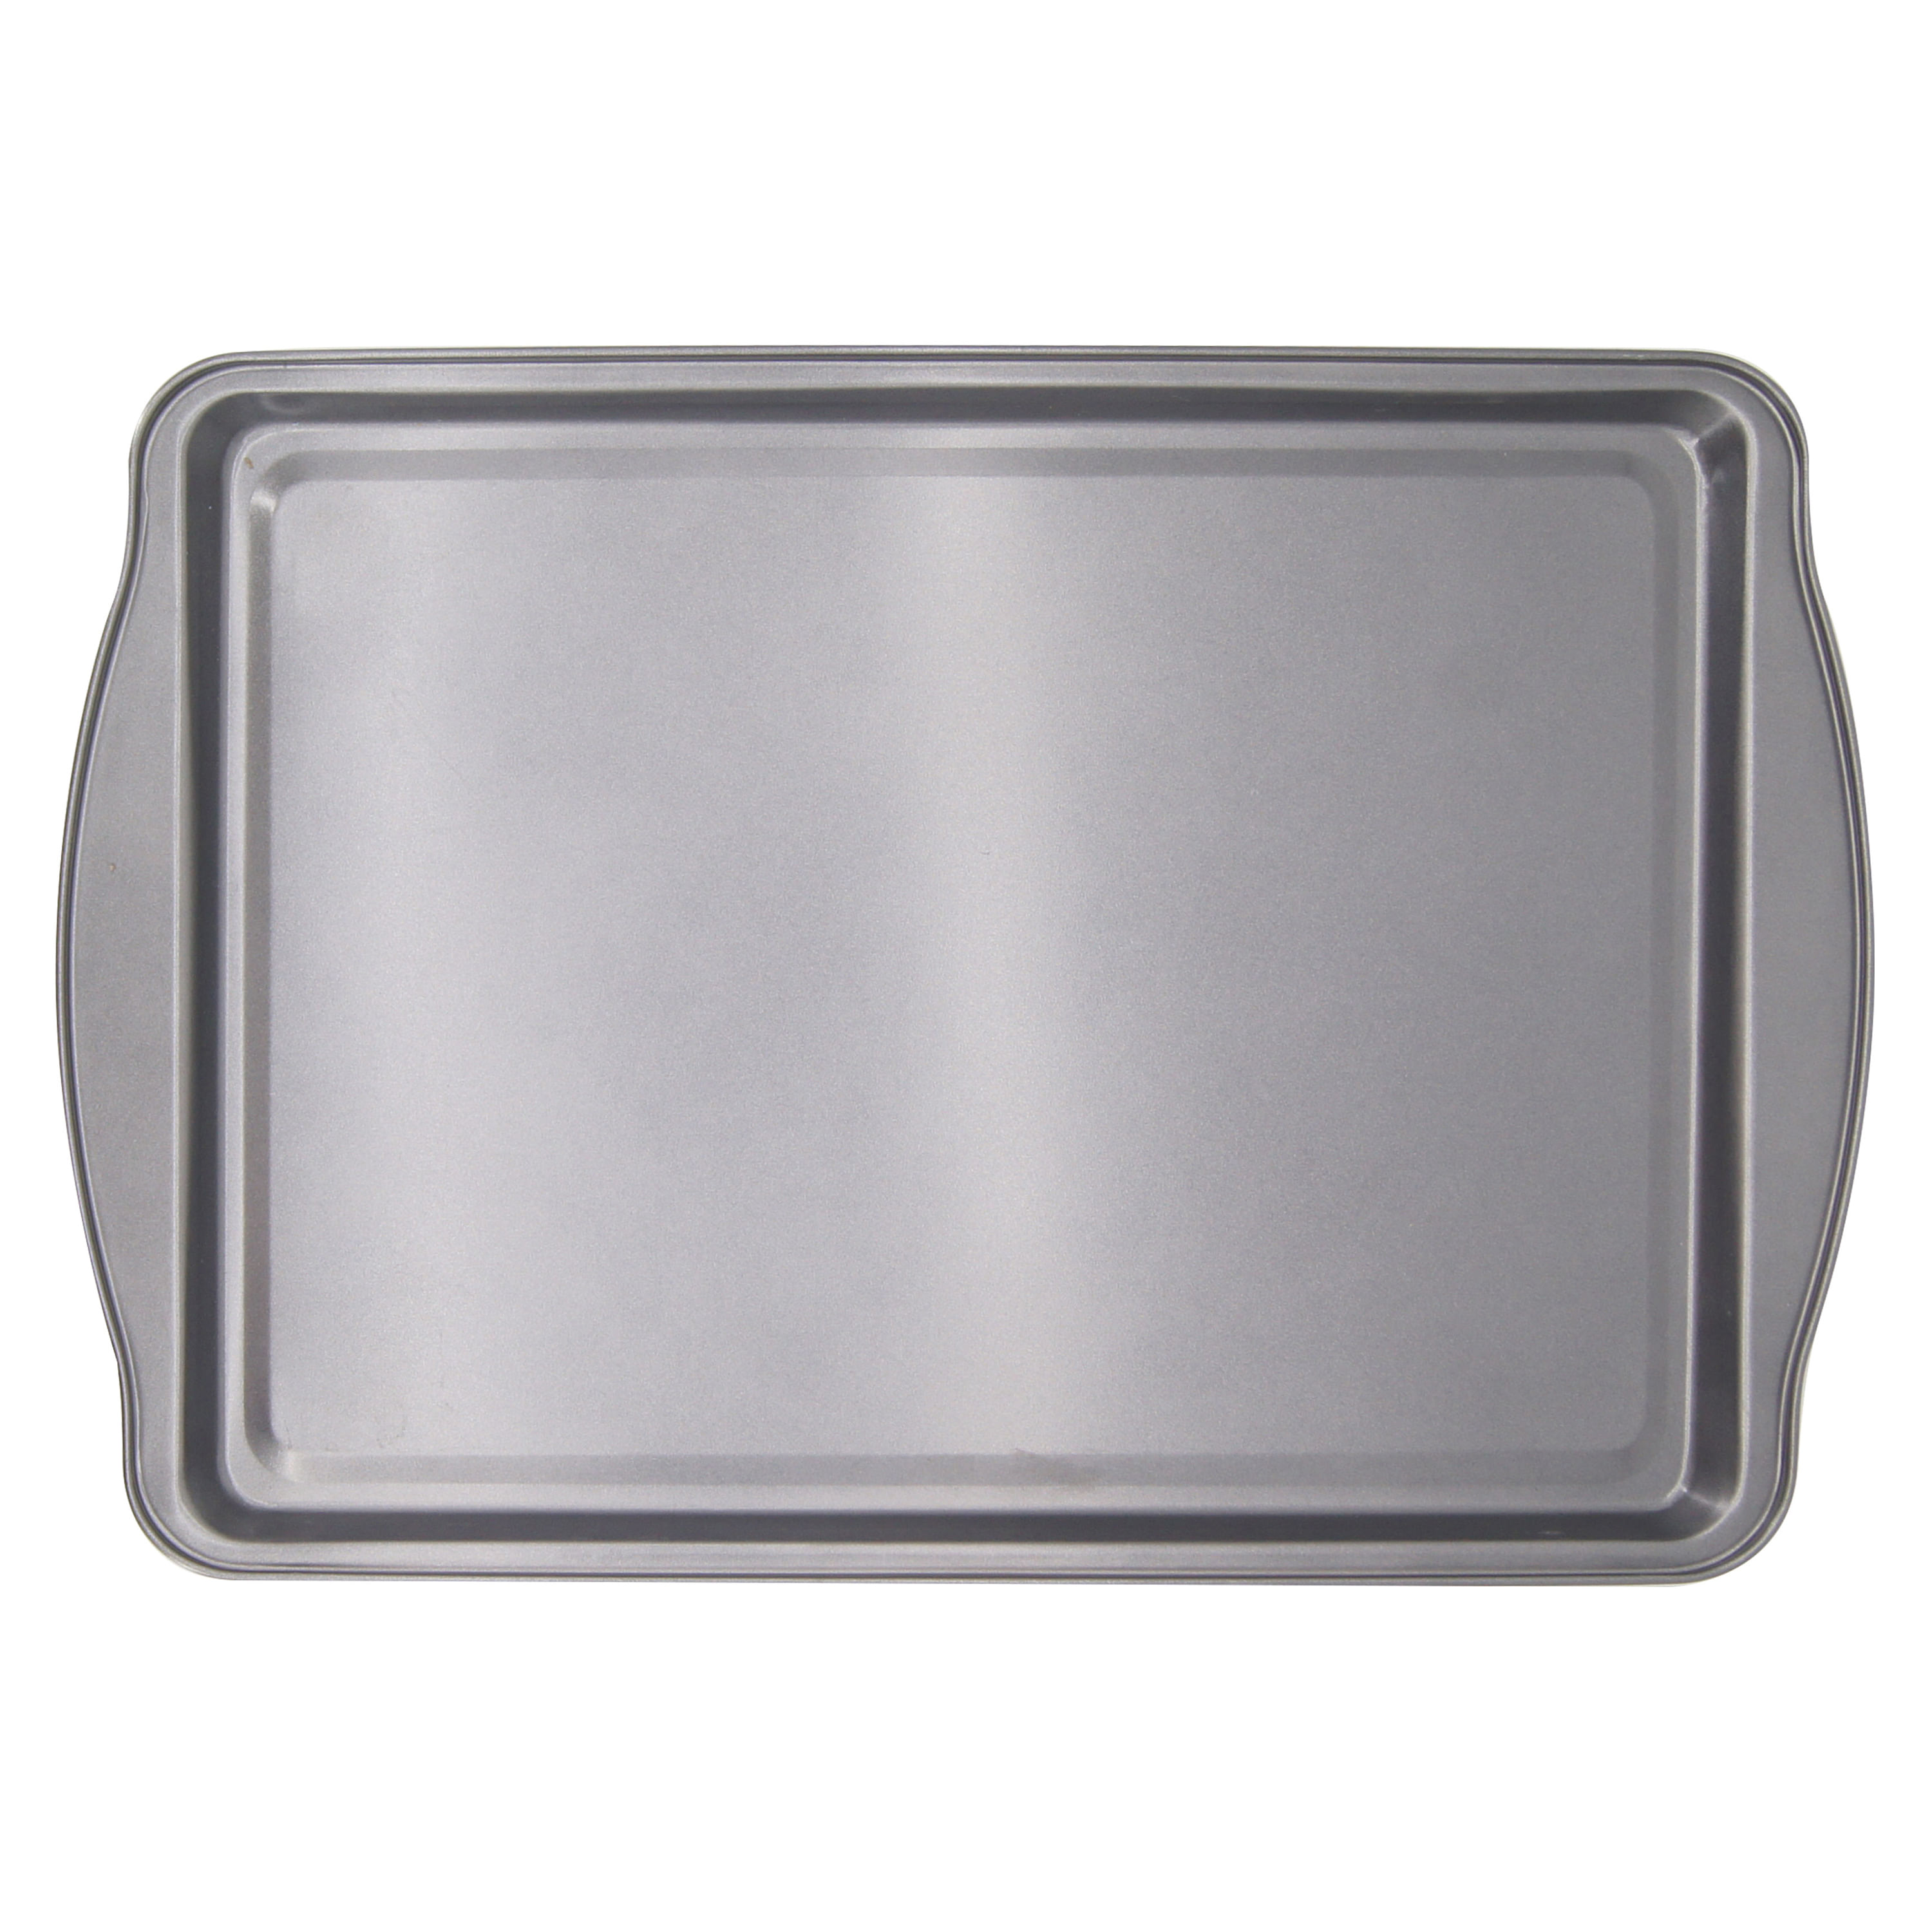 BIEAMA Paquete de 6 bandejas de aluminio para hornear de 10 x 13 pulgadas  para horno, congelador, panadería, hotel, restaurante